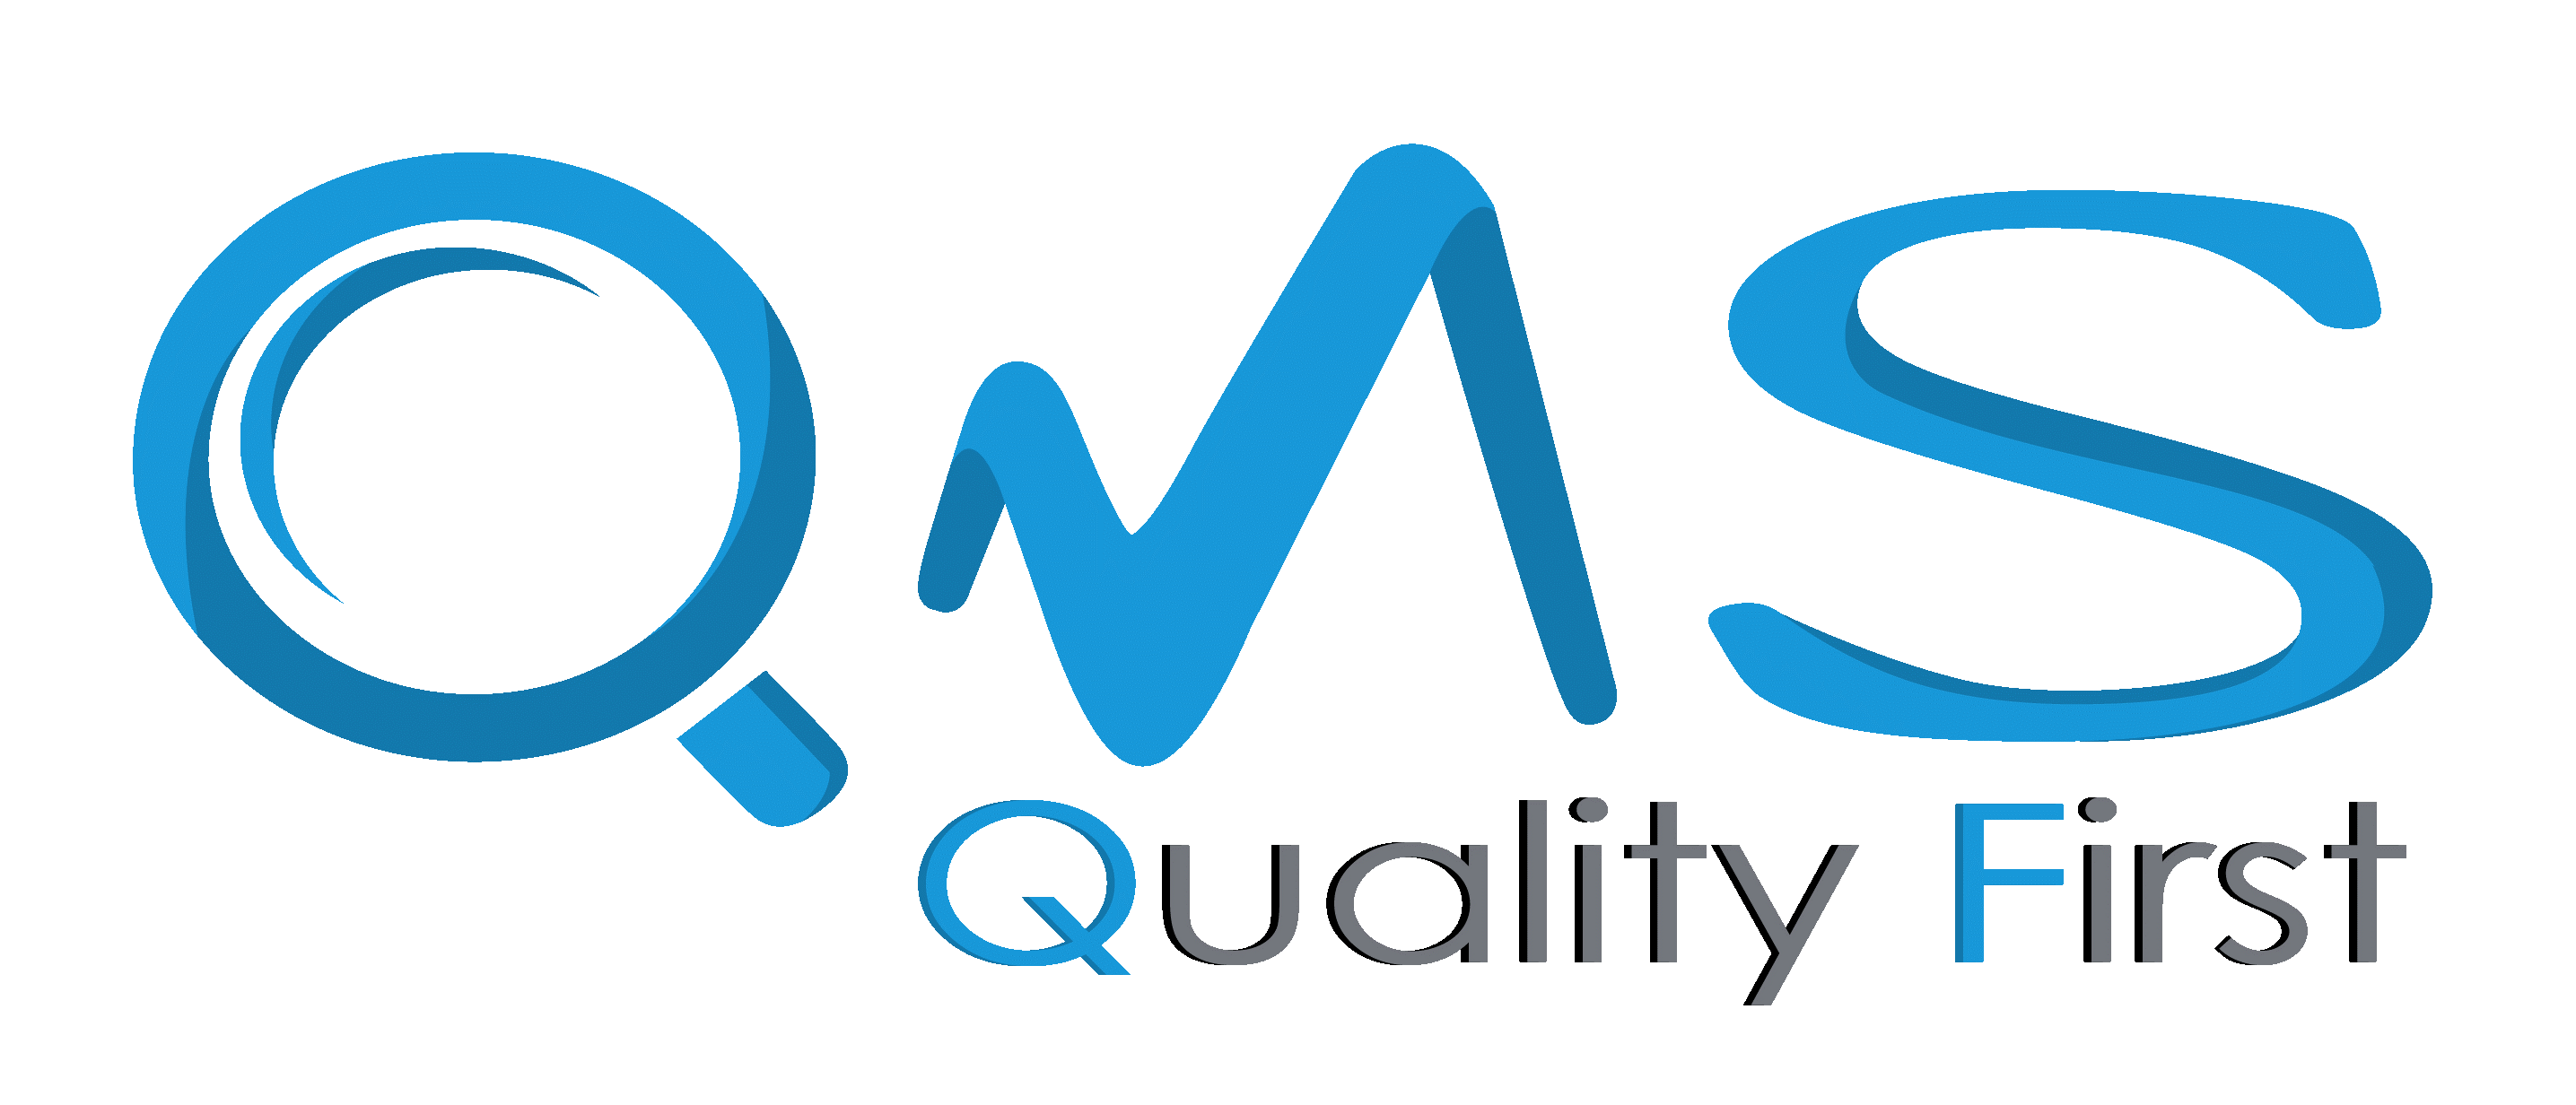 Qms là gì? khái niệm hệ thống quản lý chất lượng